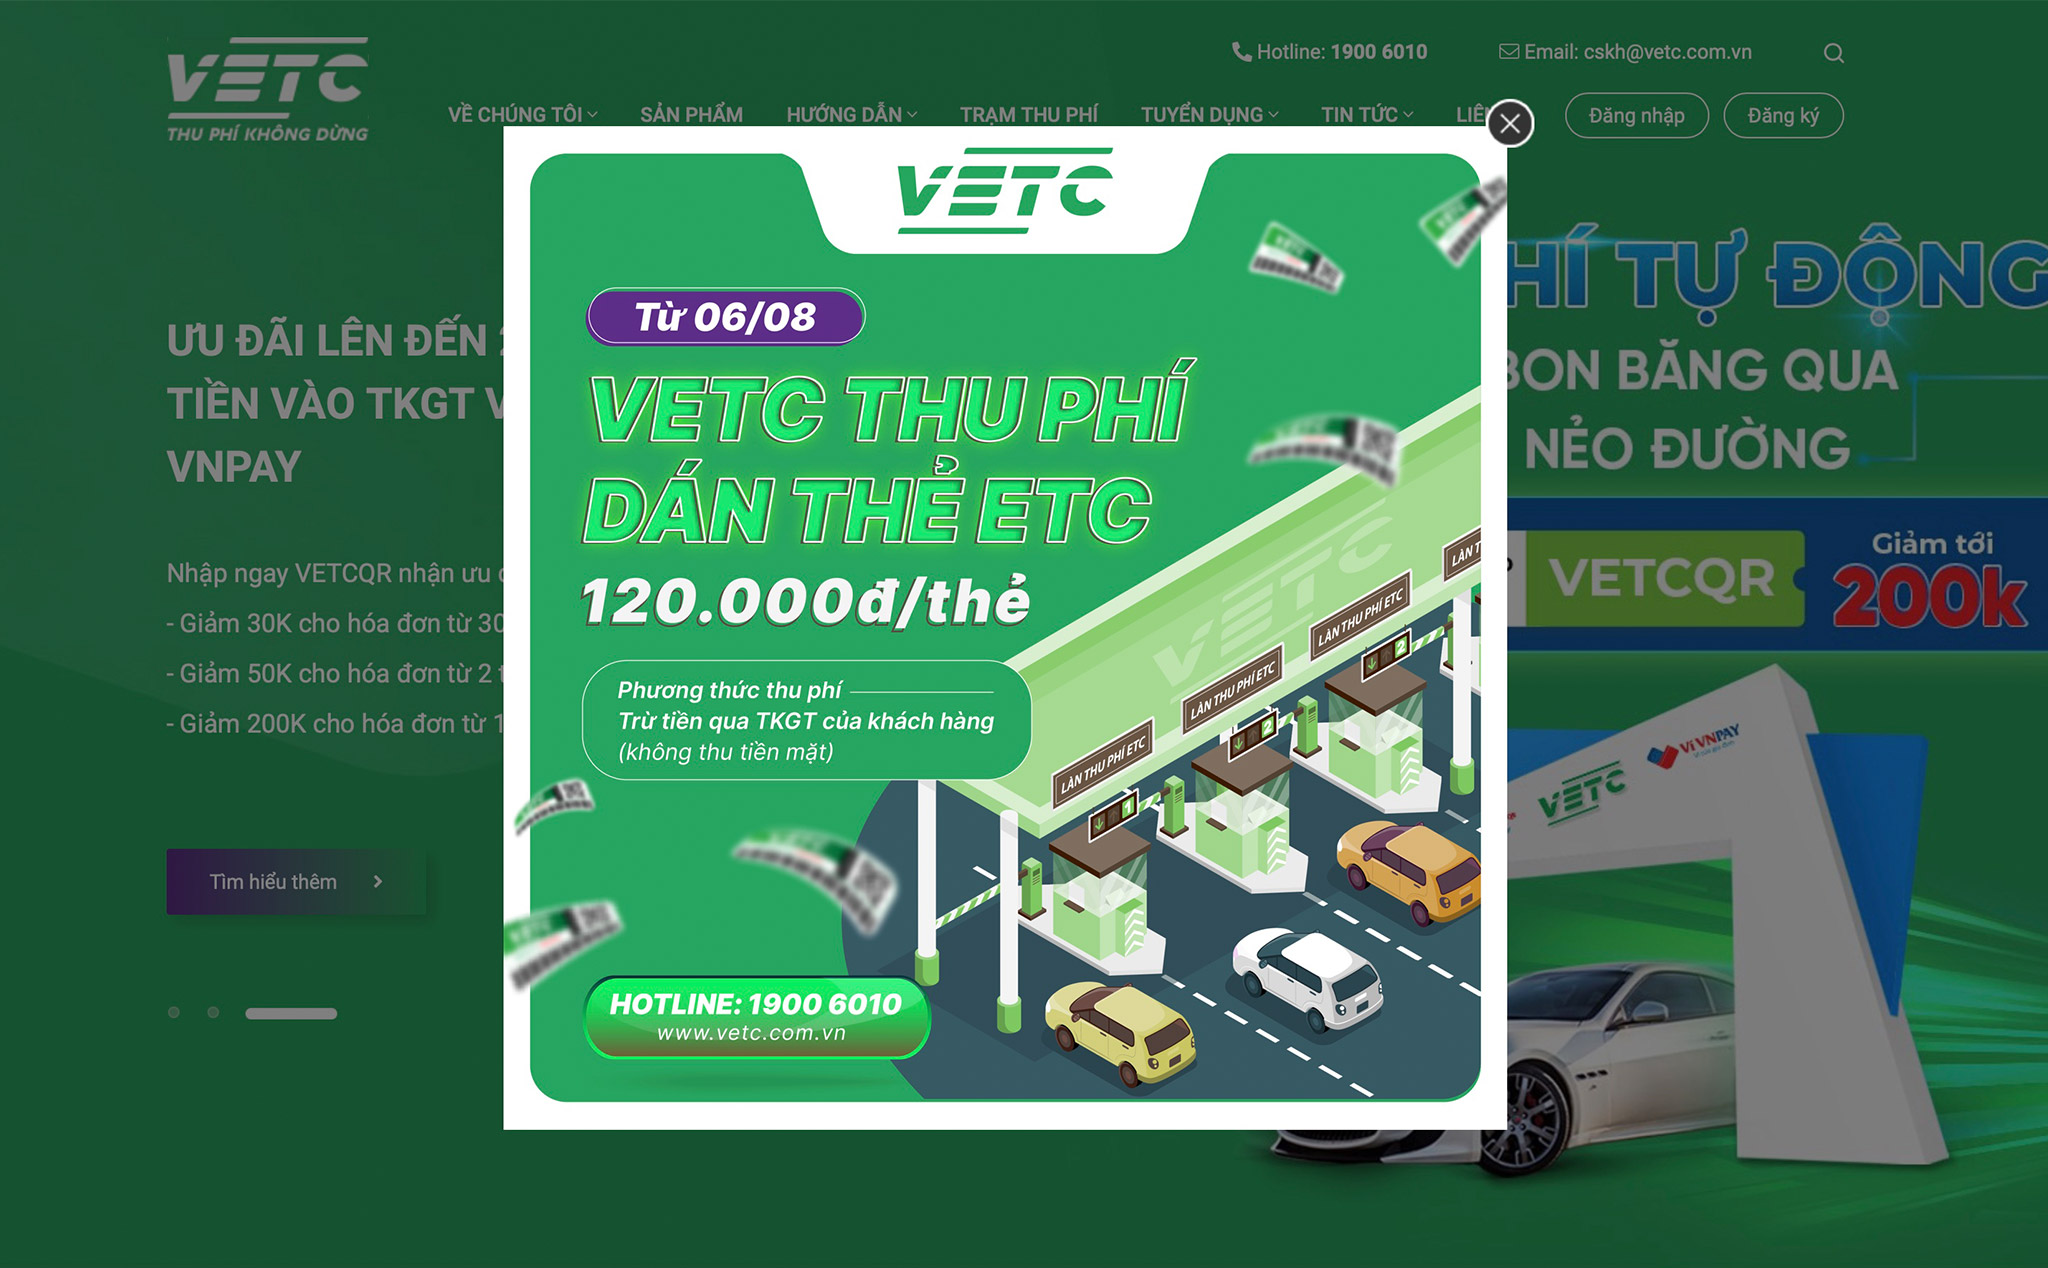 VETC thu phí 120.000đ với tất cả các xe dán mới hoặc thay thẻ từ 06/08/2022